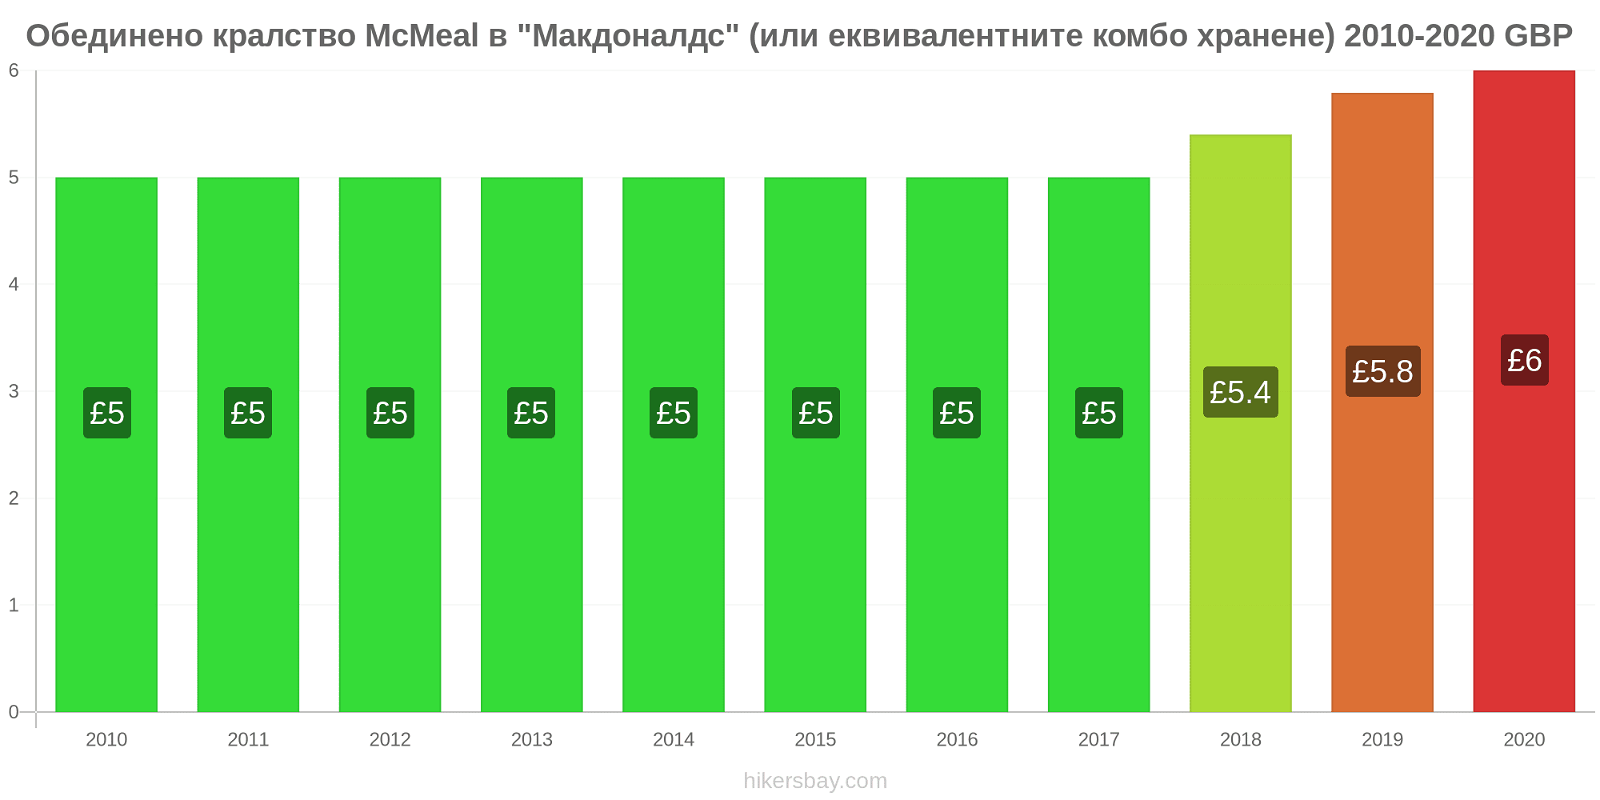 Обединено кралство ценови промени McMeal в "Макдоналдс" (или еквивалентните комбо хранене) hikersbay.com